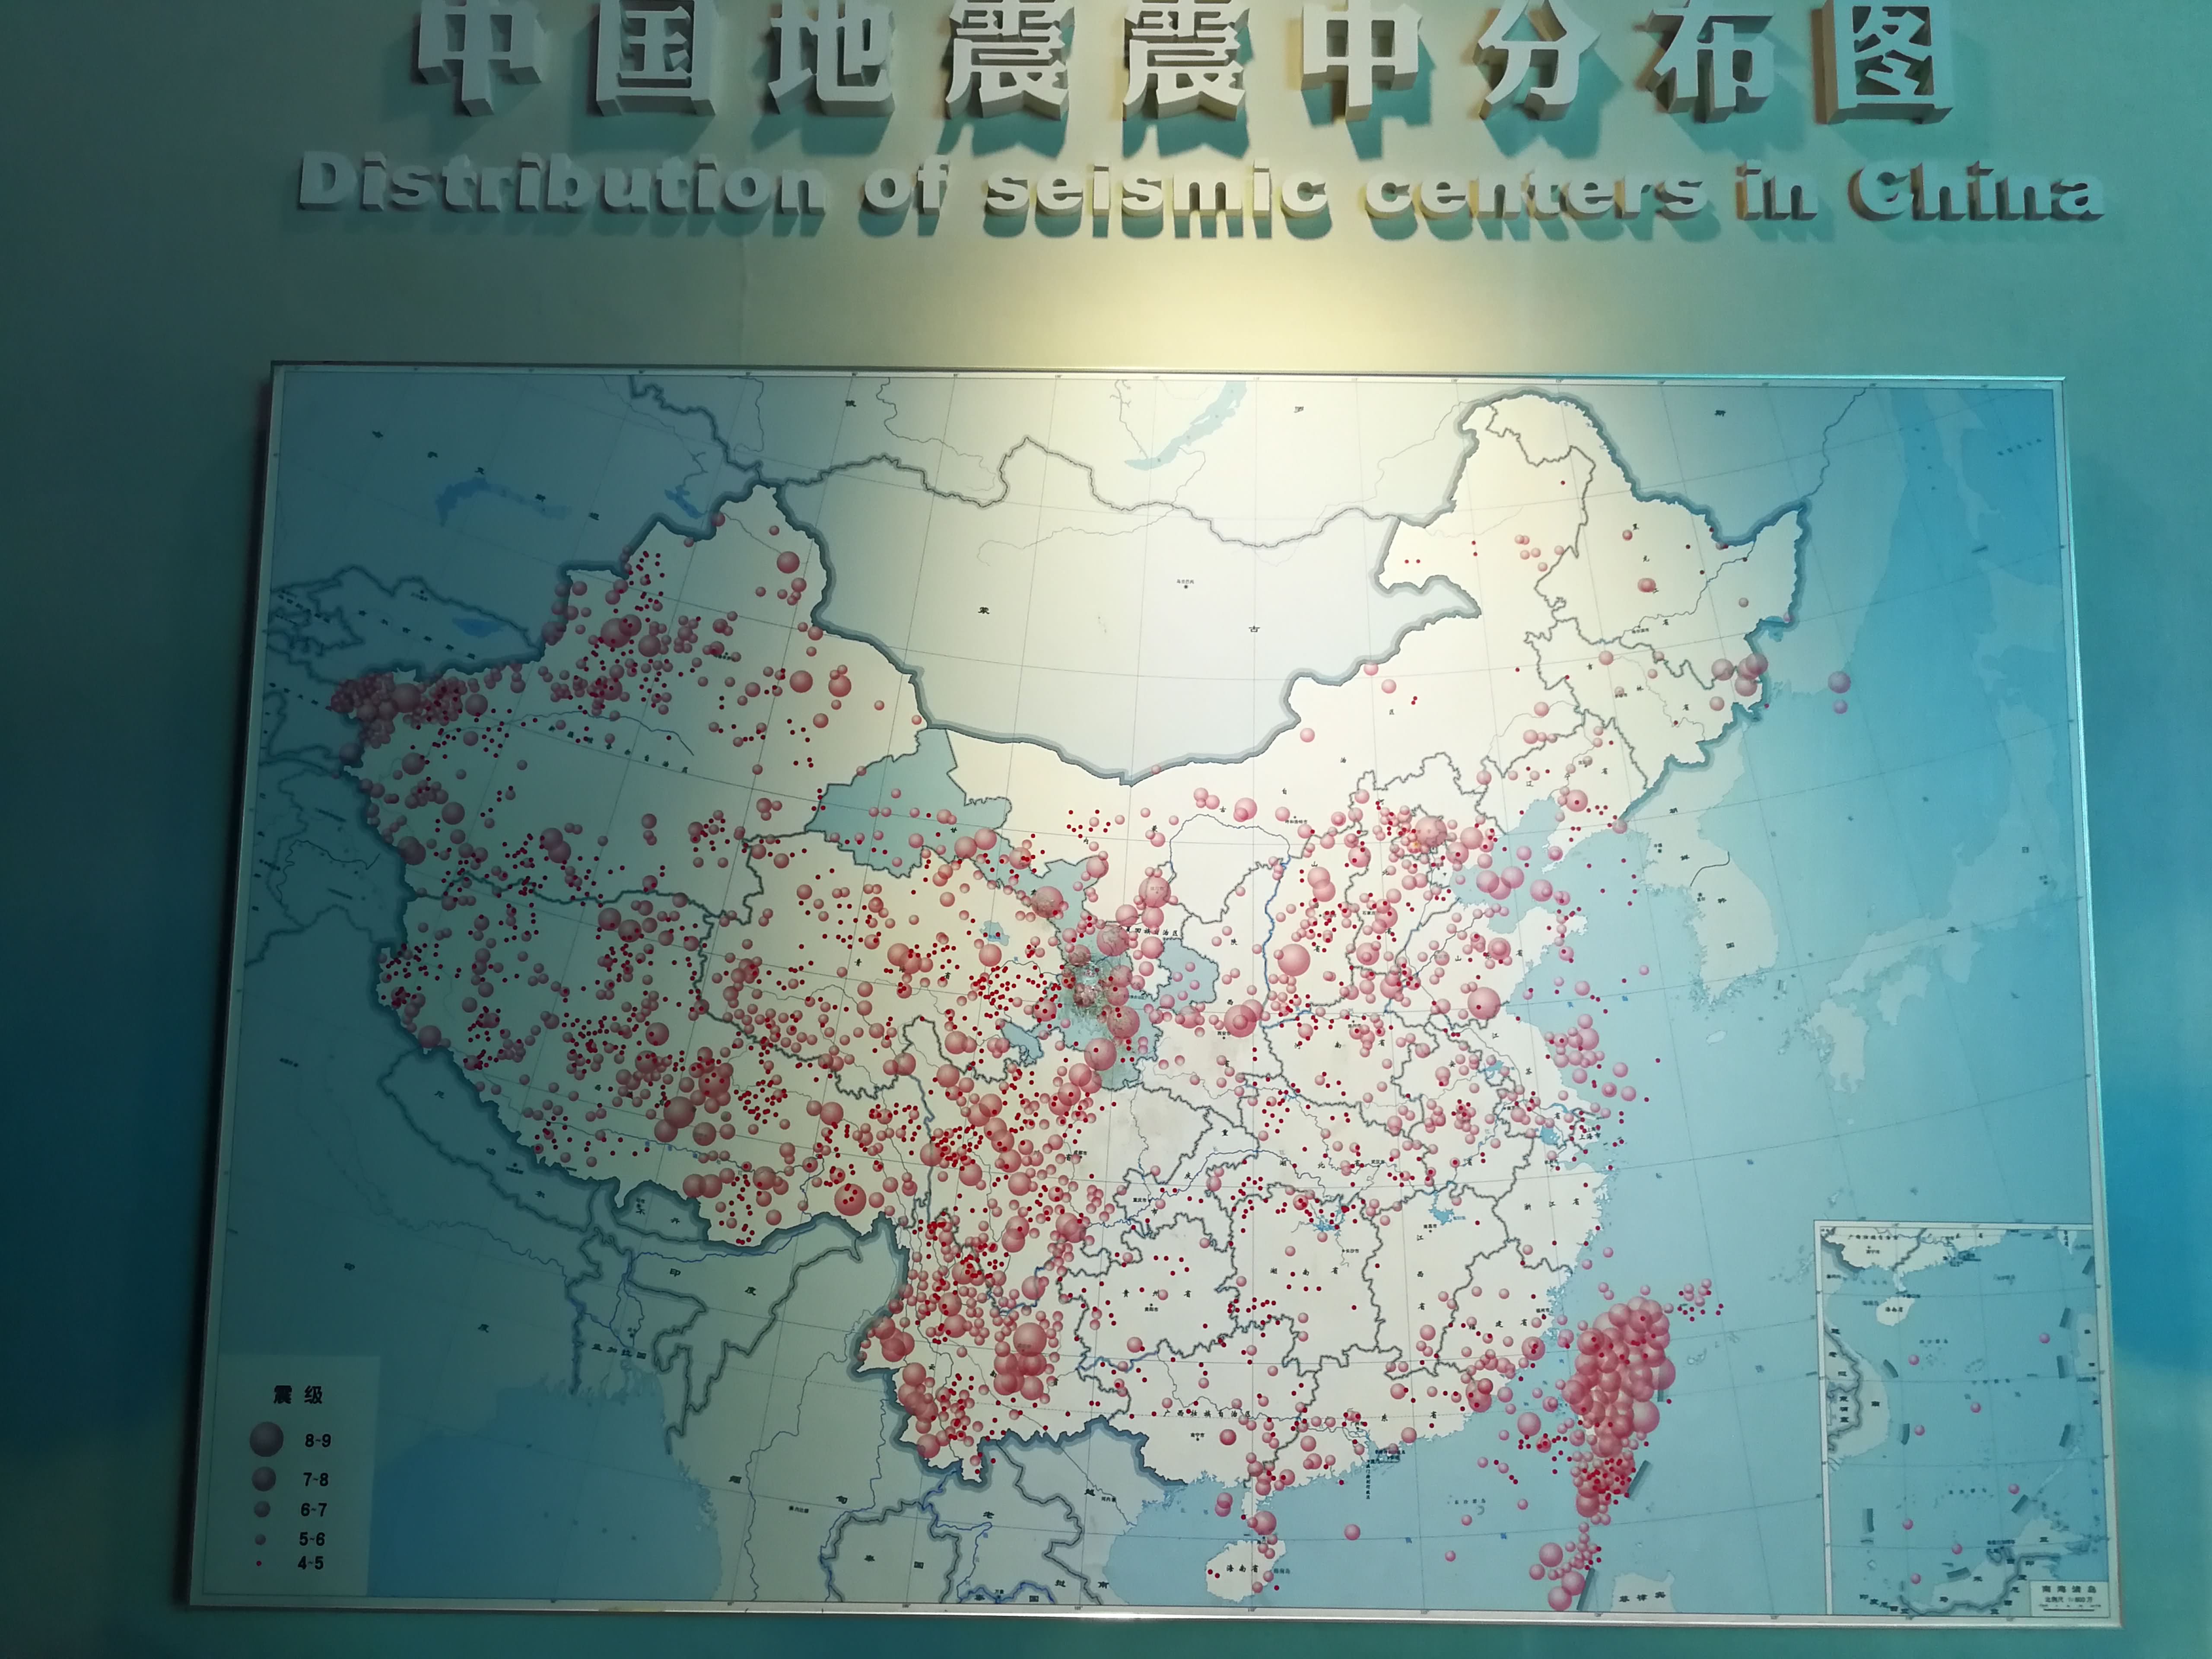 中国地震板块地图高清图片